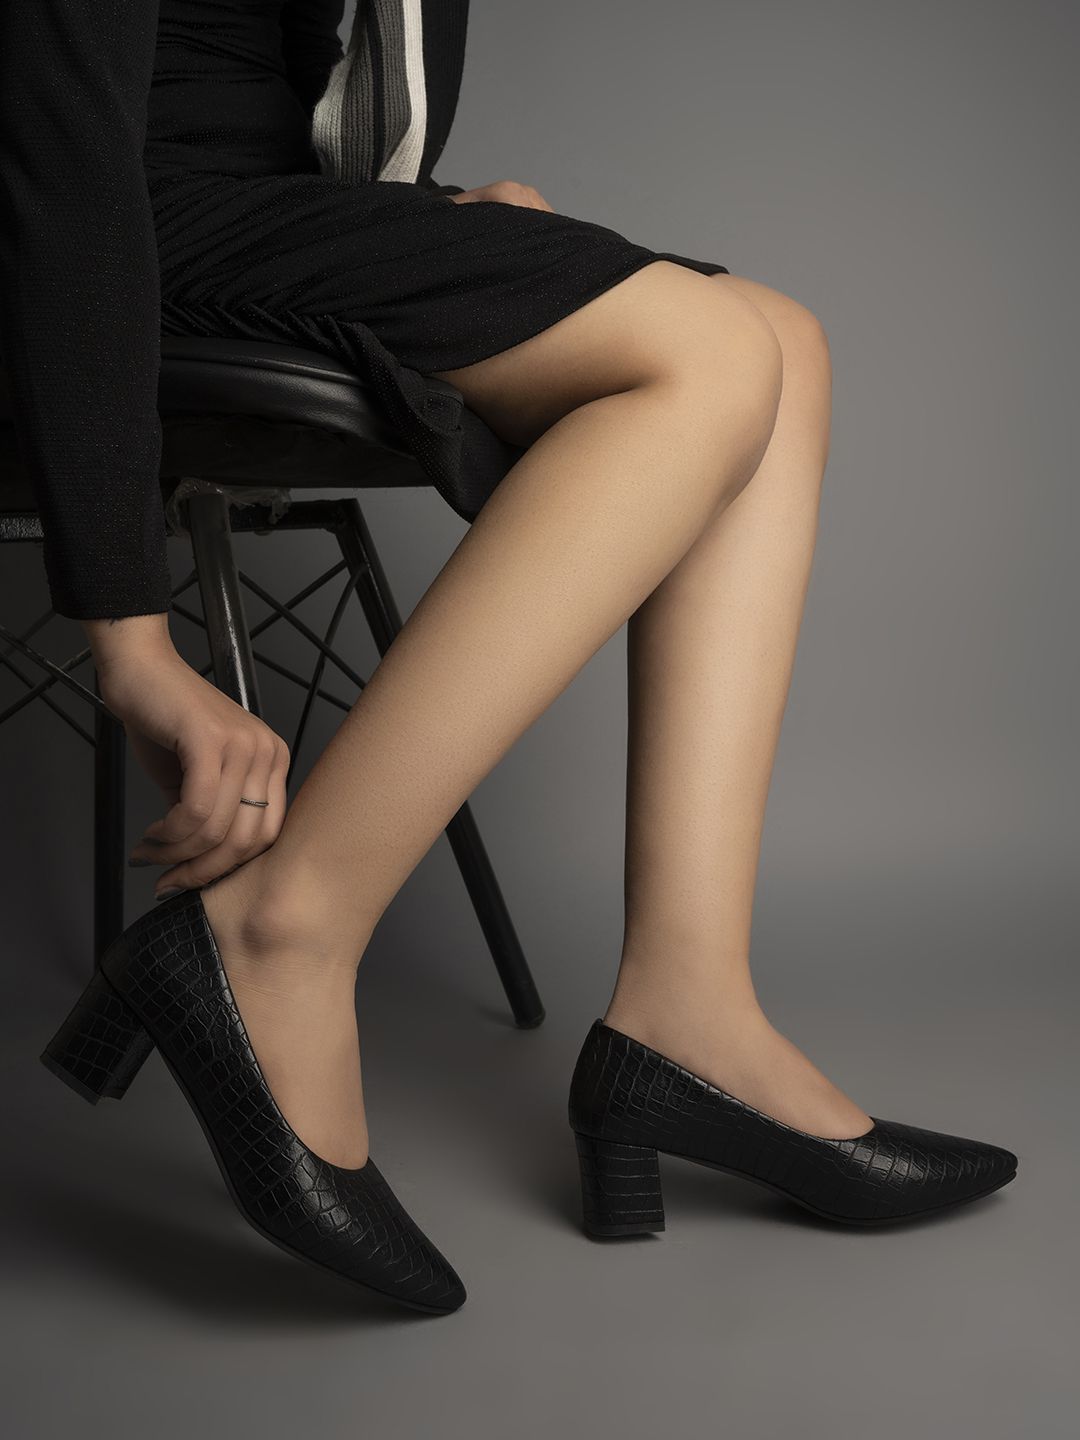     			Shoetopia - Black Women's Pumps Heels